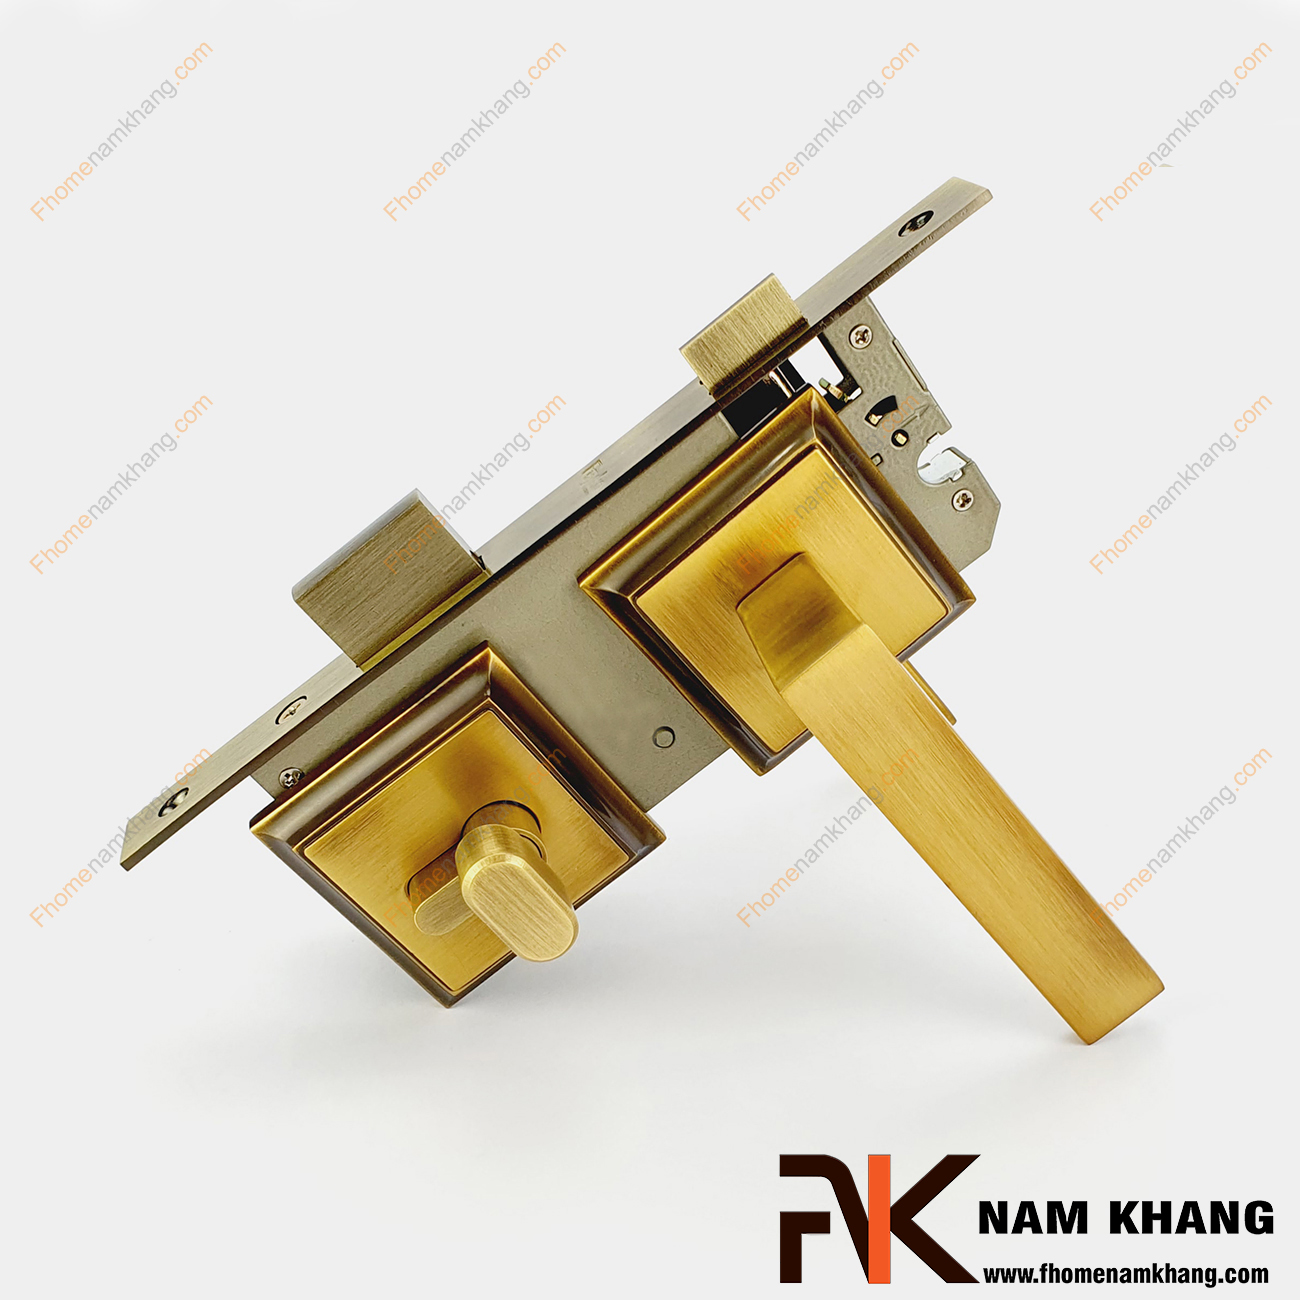 Khóa cửa phân thể bằng đồng cao cấp màu đồng vàng NK555-RX có thiết kế dạng ốp vuông, bo tròn các góc cạnh tạo nên sự tinh tế và cao cấp.